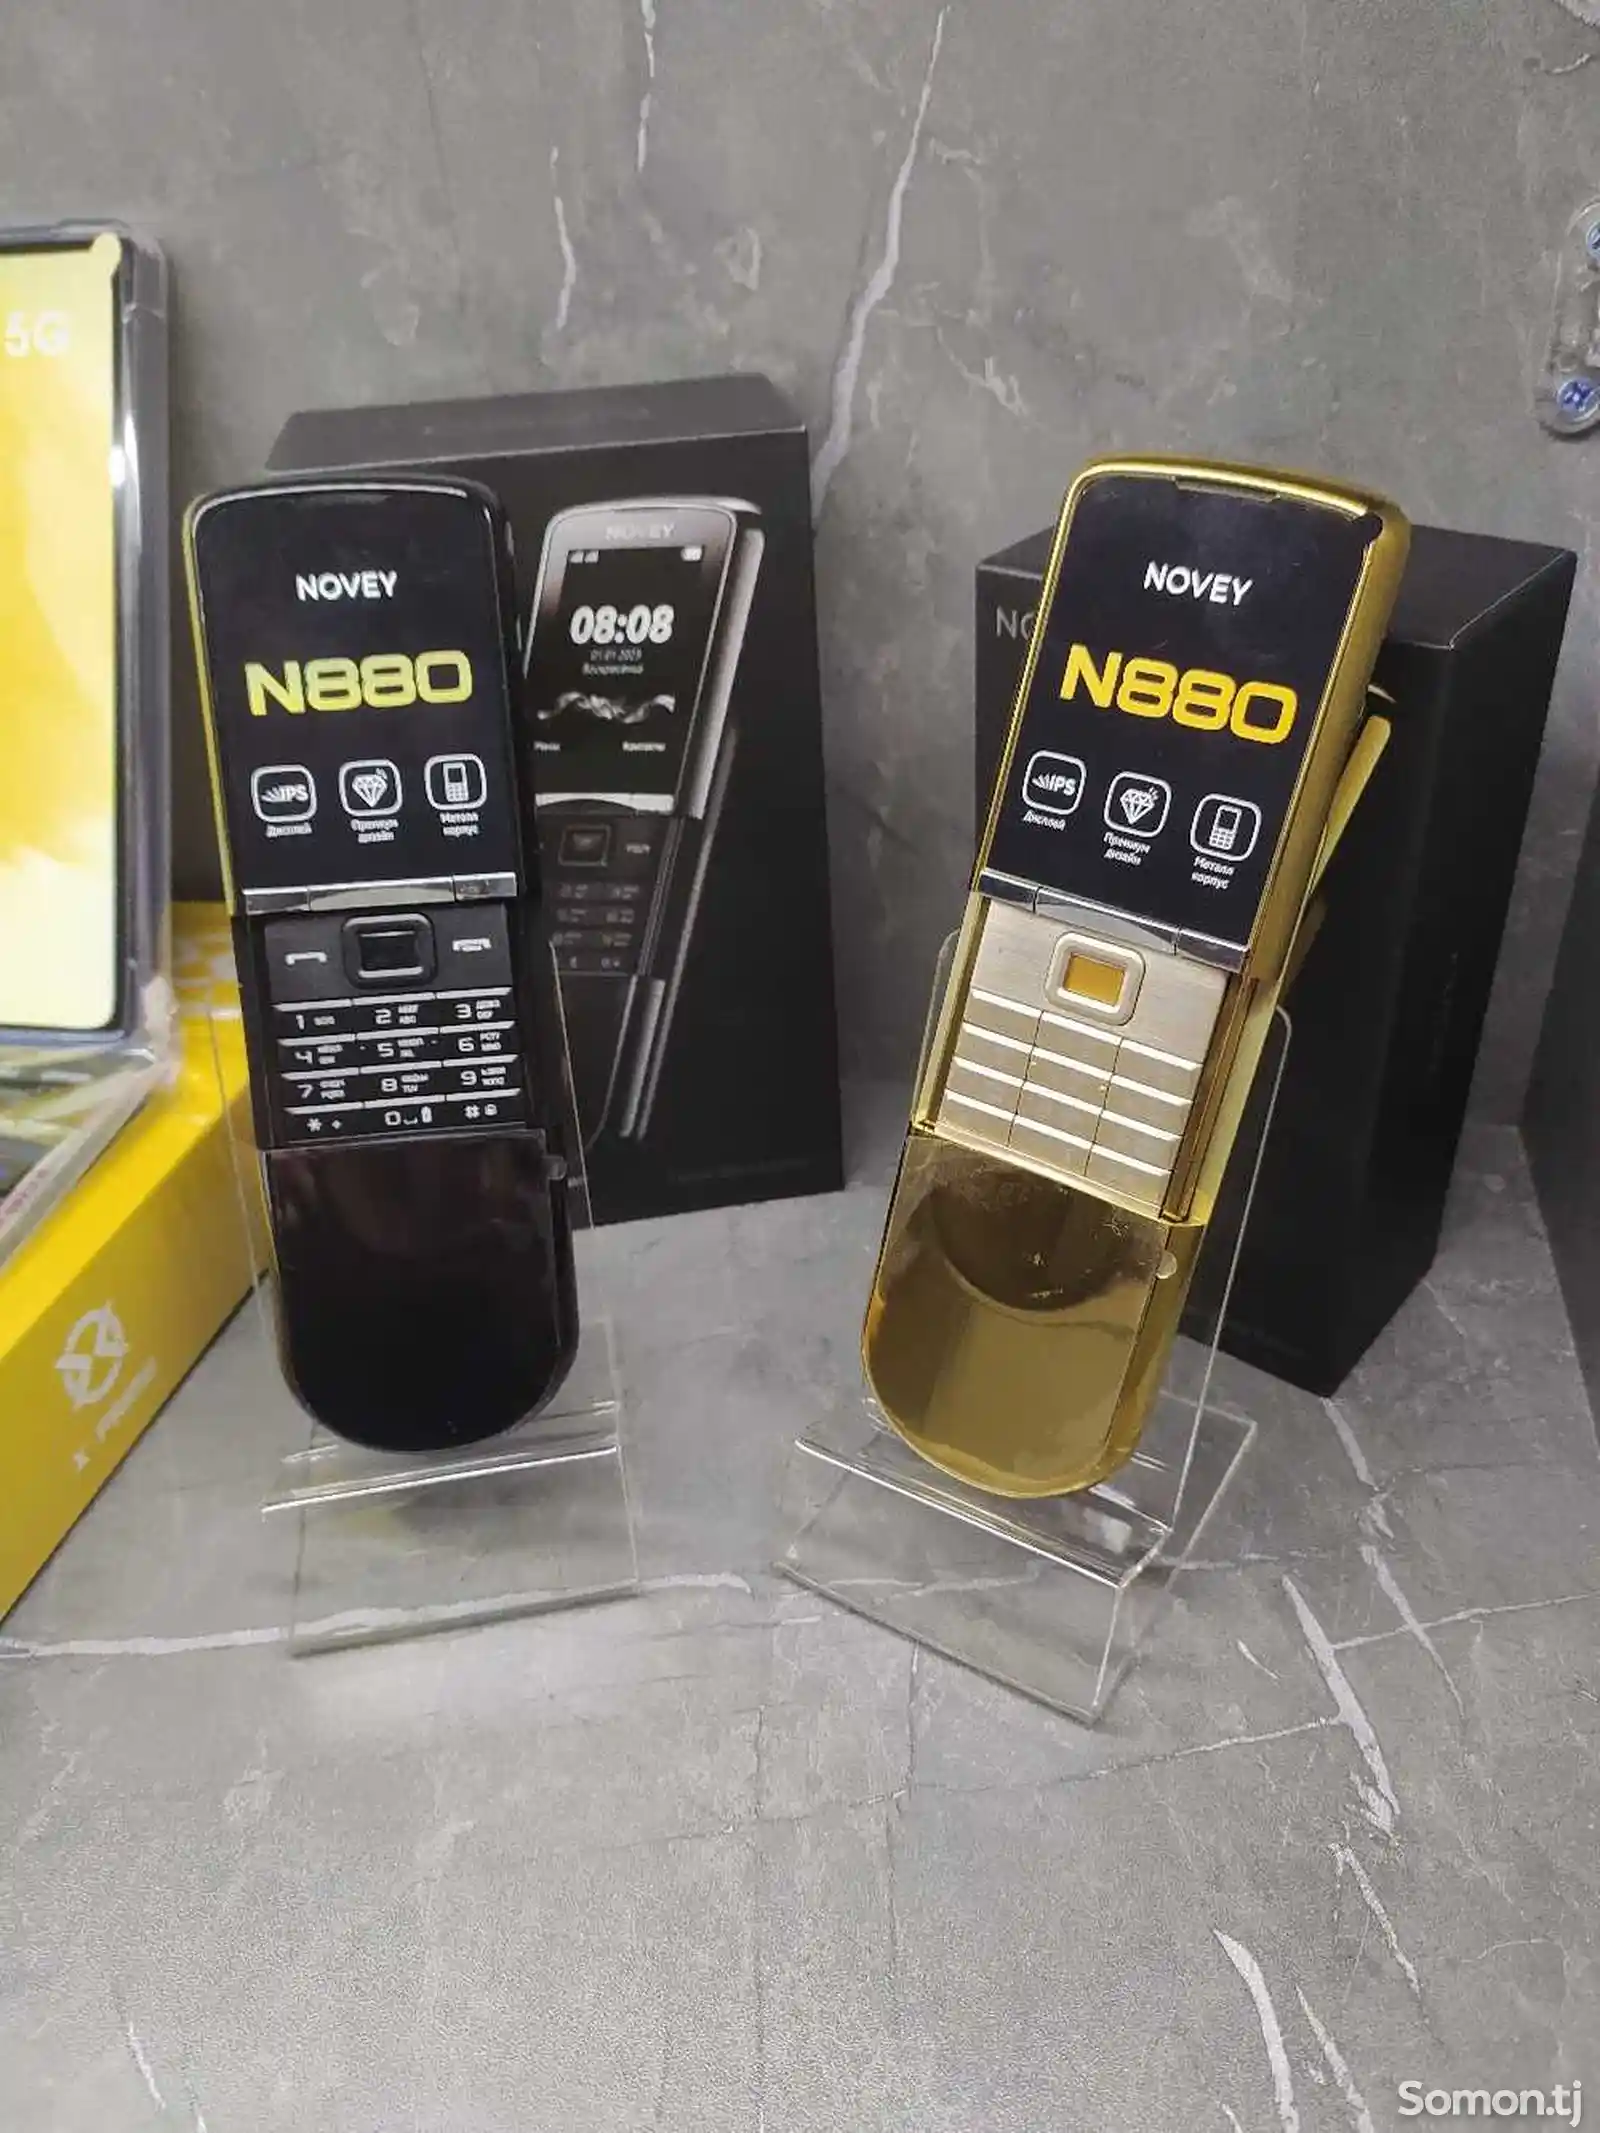 Novey N880-1